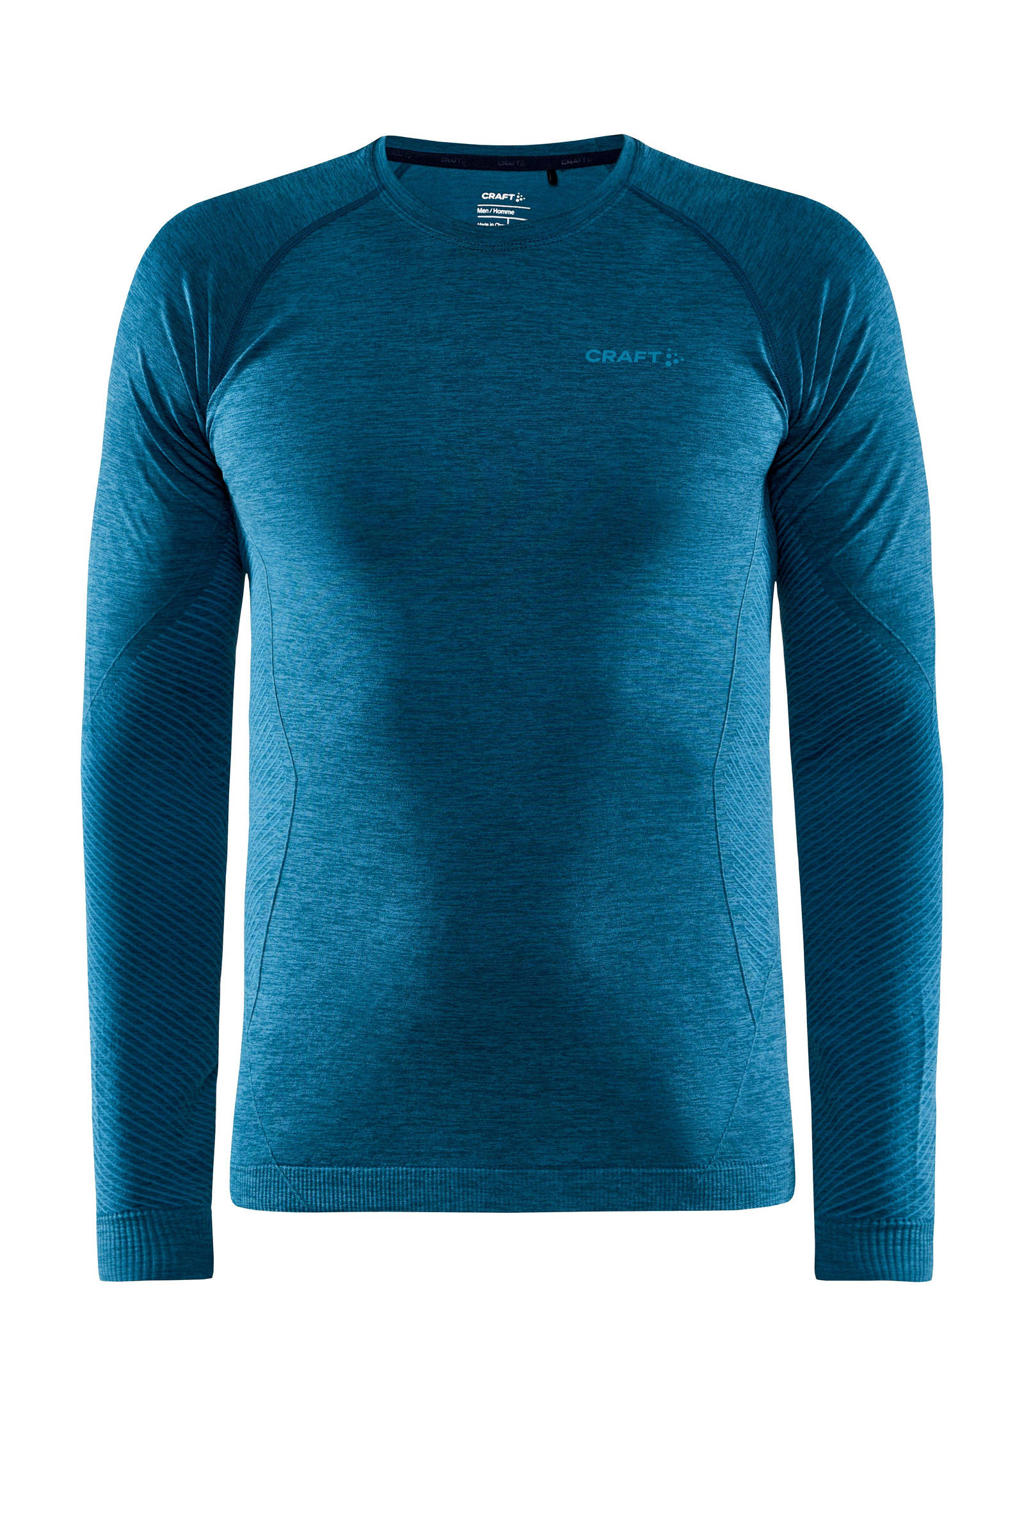 Blauwe heren Craft sport T-shirt van polyester met lange mouwen en ronde hals